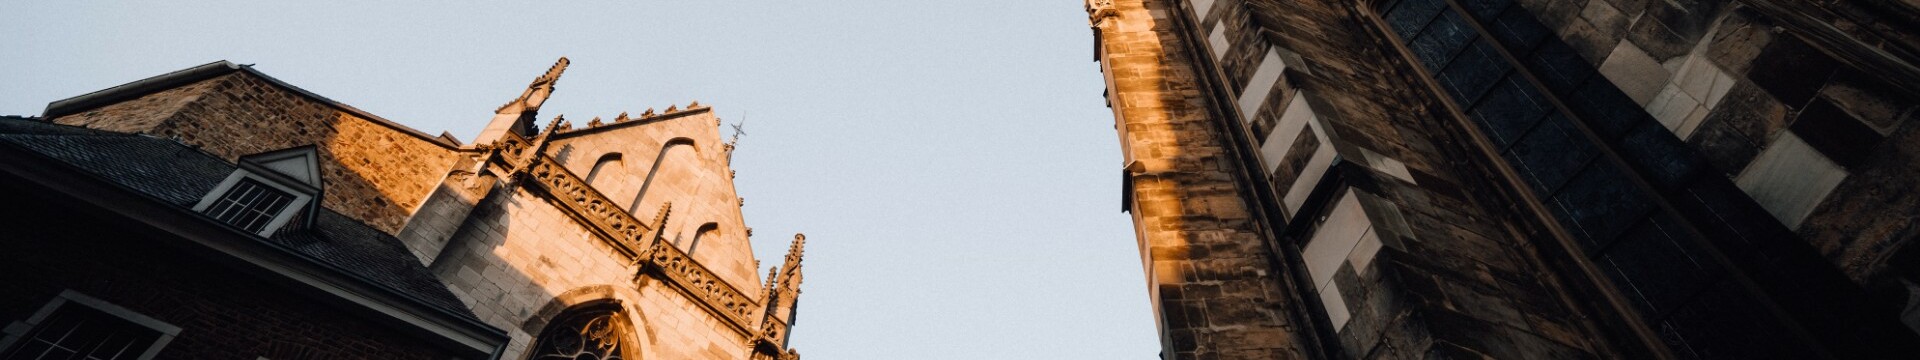 Der Aachener Dom ragt, von unten fotografiert, in den Himmel.